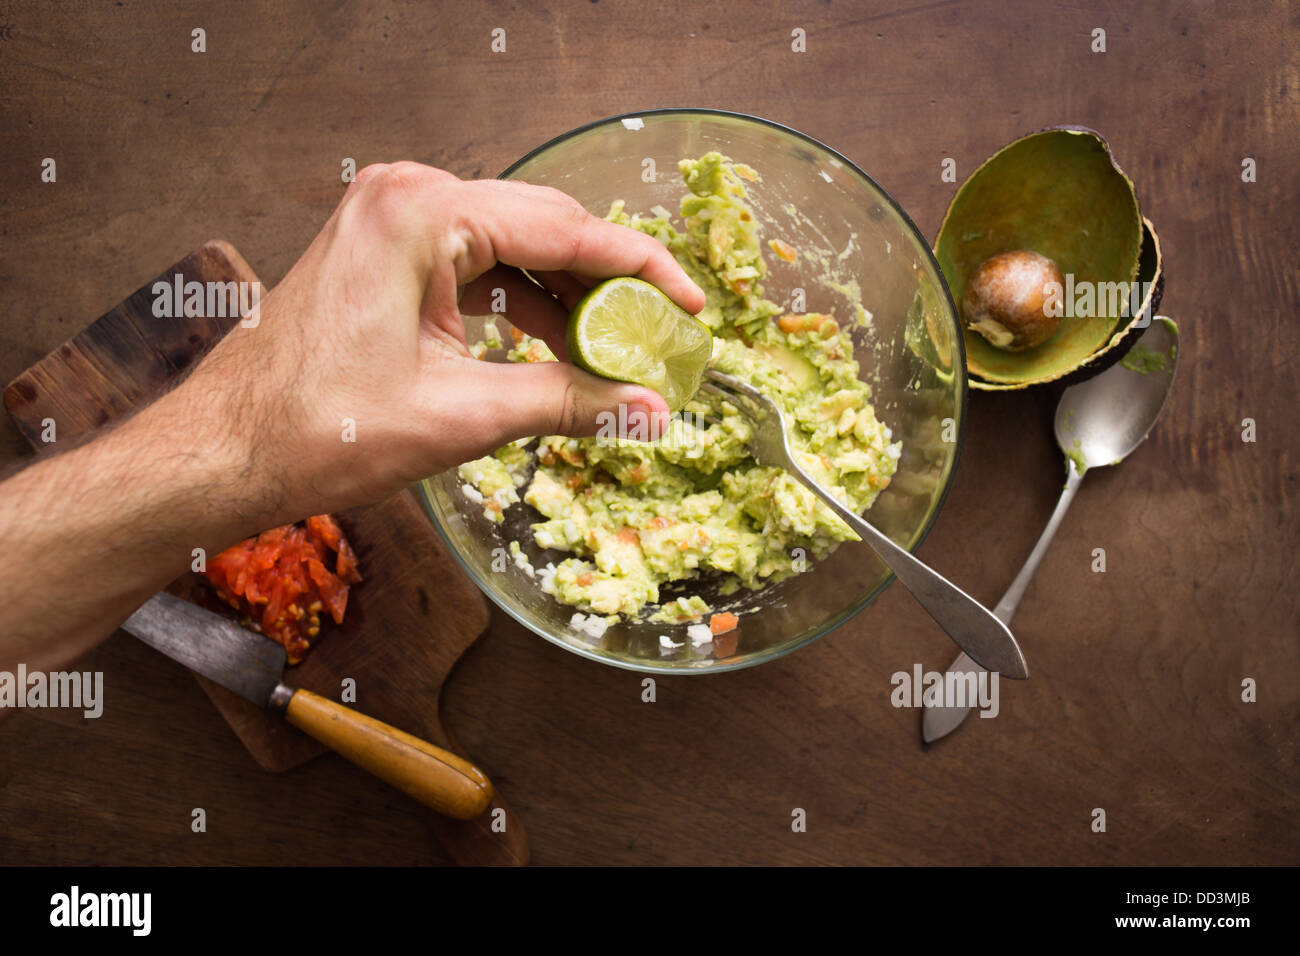 La spremitura di lime sul guacamole mix panoramica Foto Stock